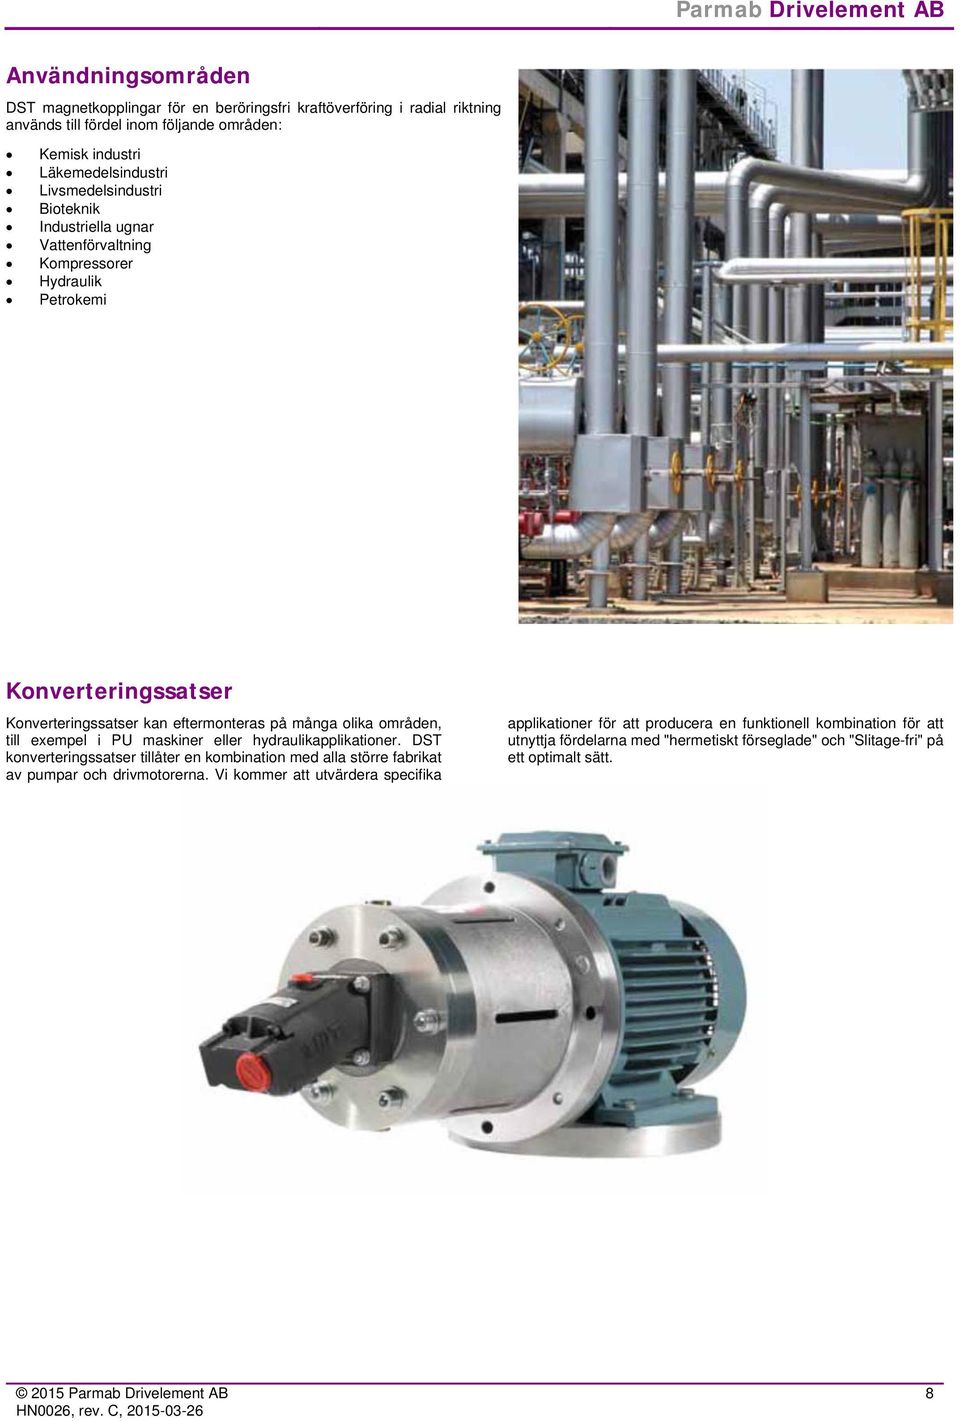 områden, till exempel i PU maskiner eller hydraulikapplikationer. DST konverteringssatser tillåter en kombination med alla större fabrikat av pumpar och drivmotorerna.